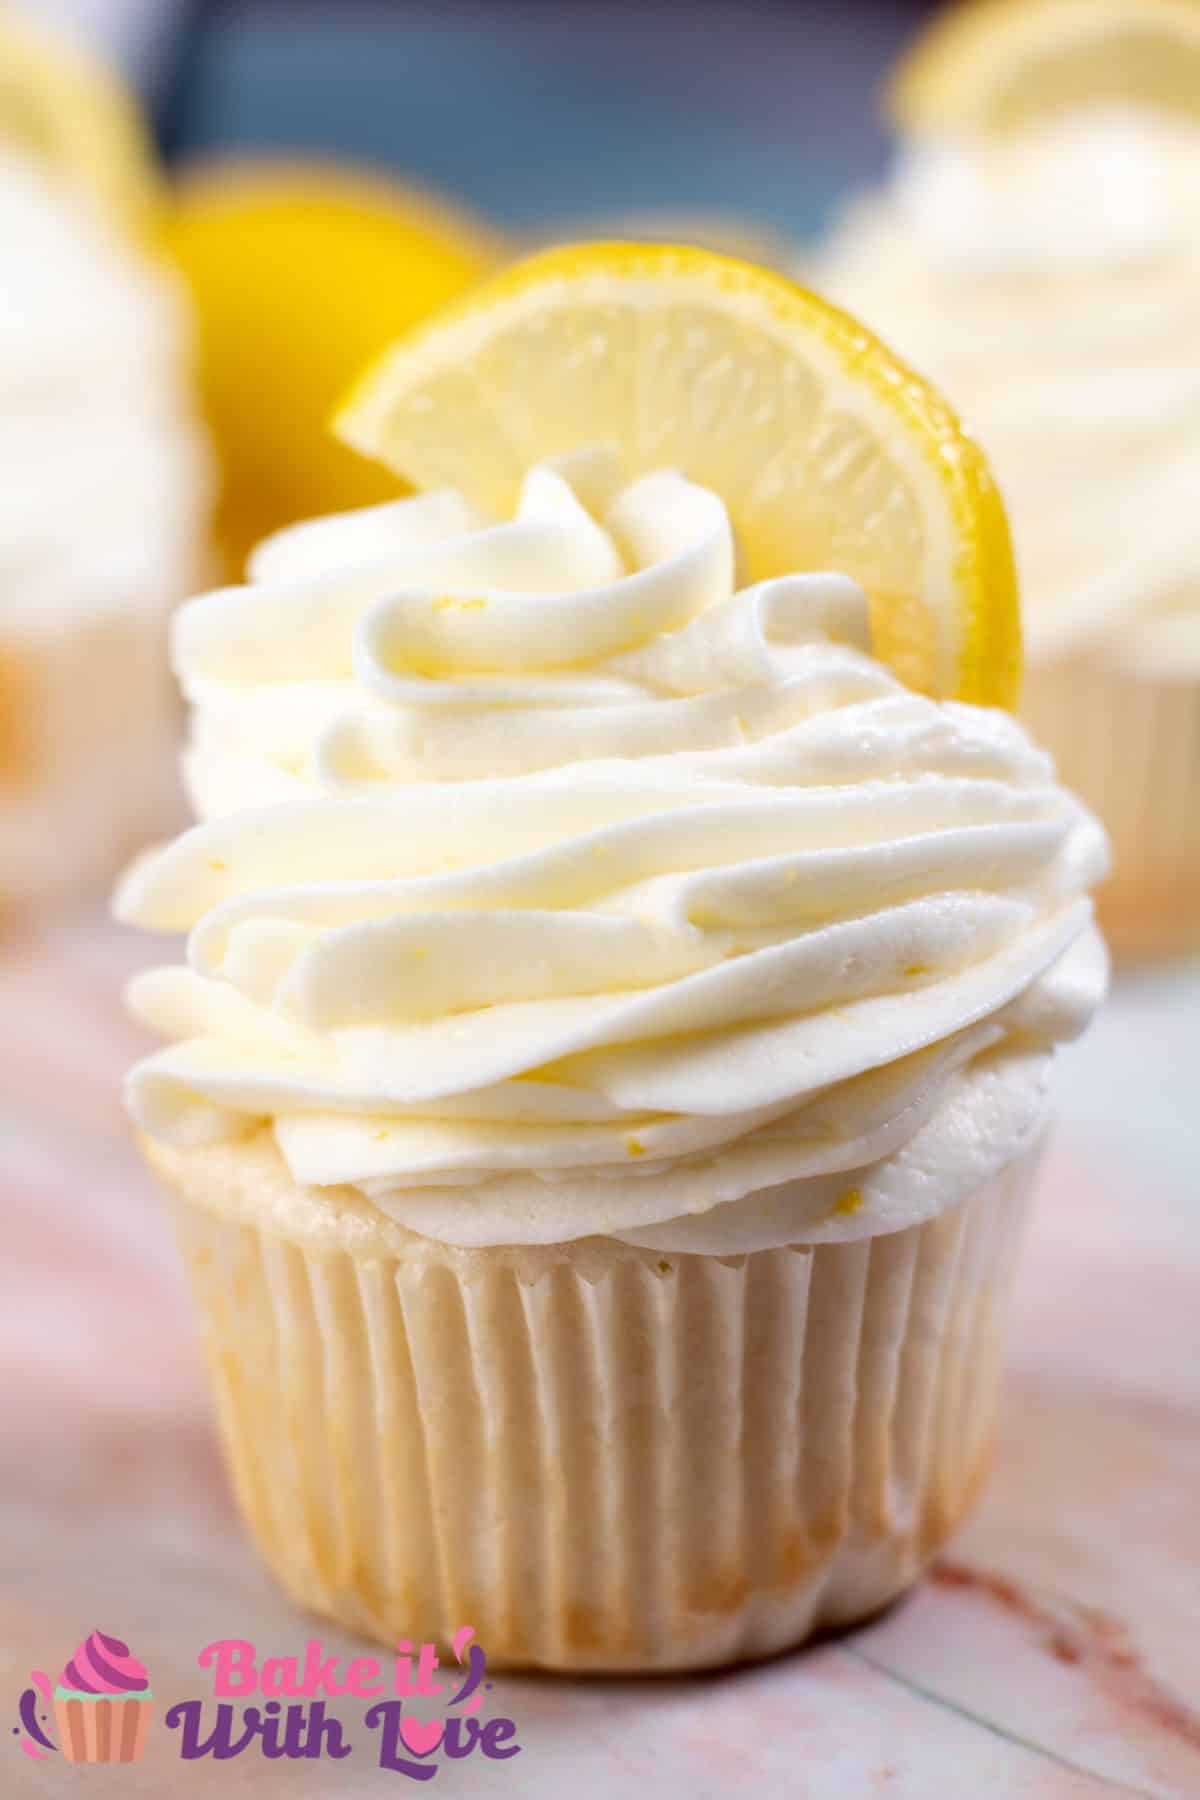 Vysoký obrázek hrnkového dortu s citronovou polevou ze smetanového sýra.